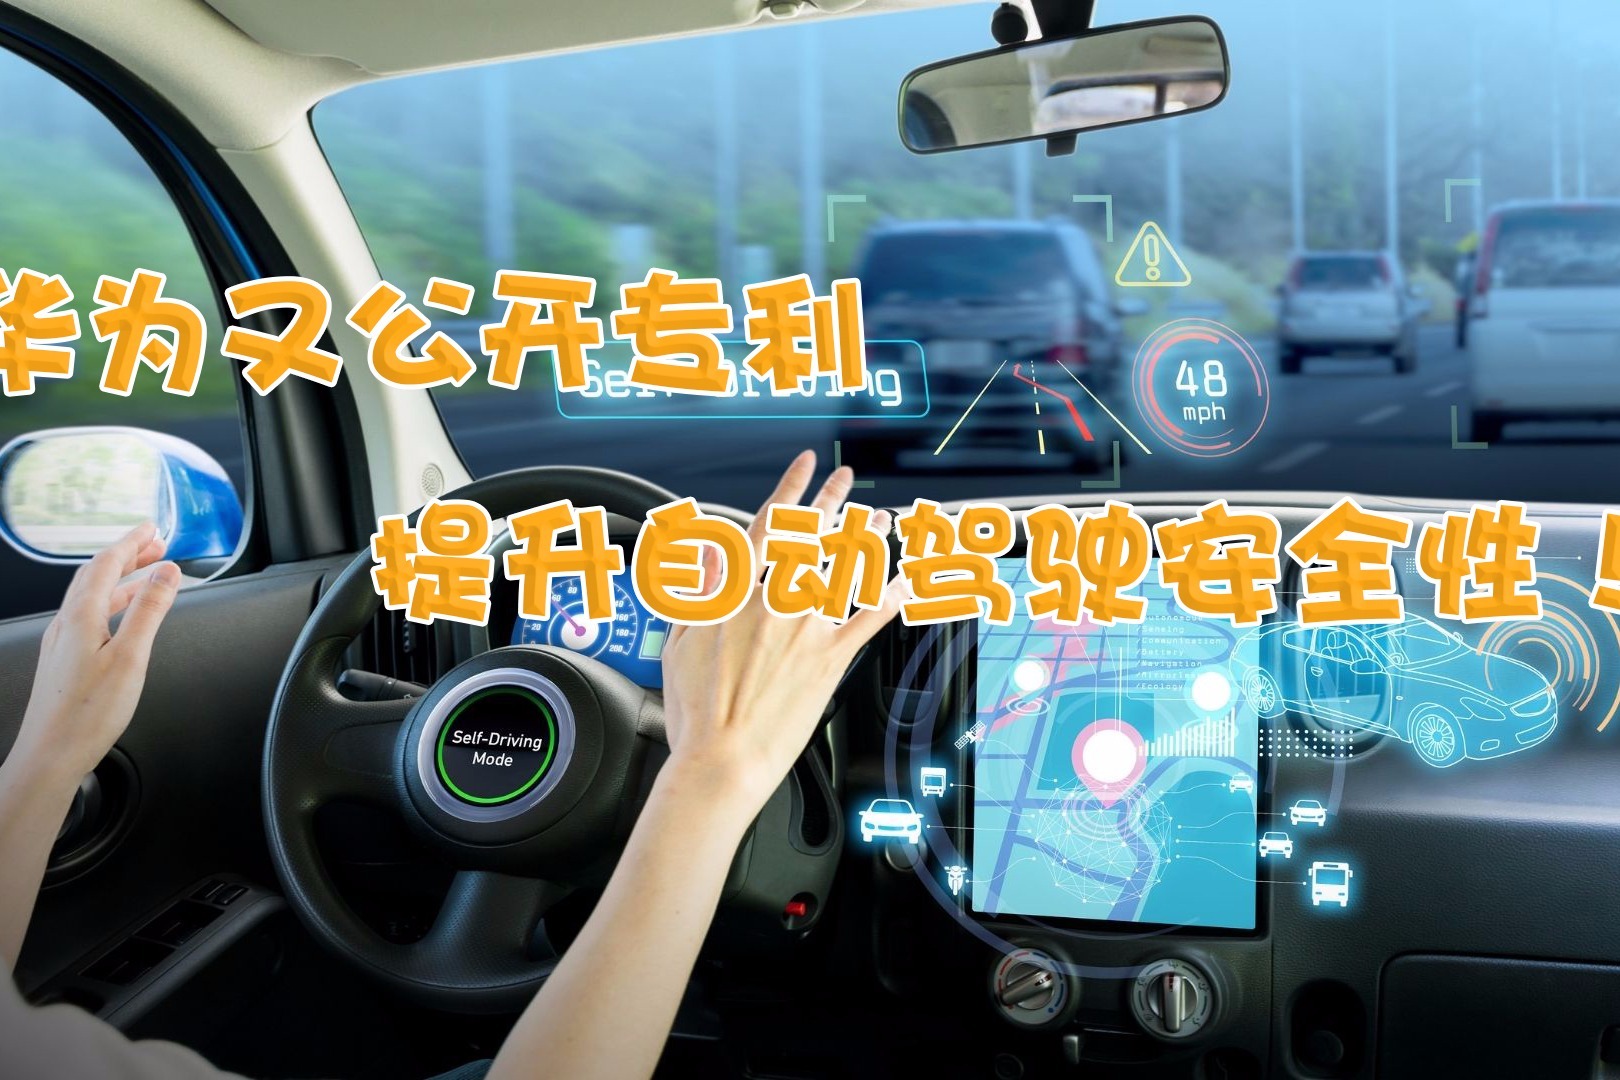 华为新专利可检测自动驾驶是否失效